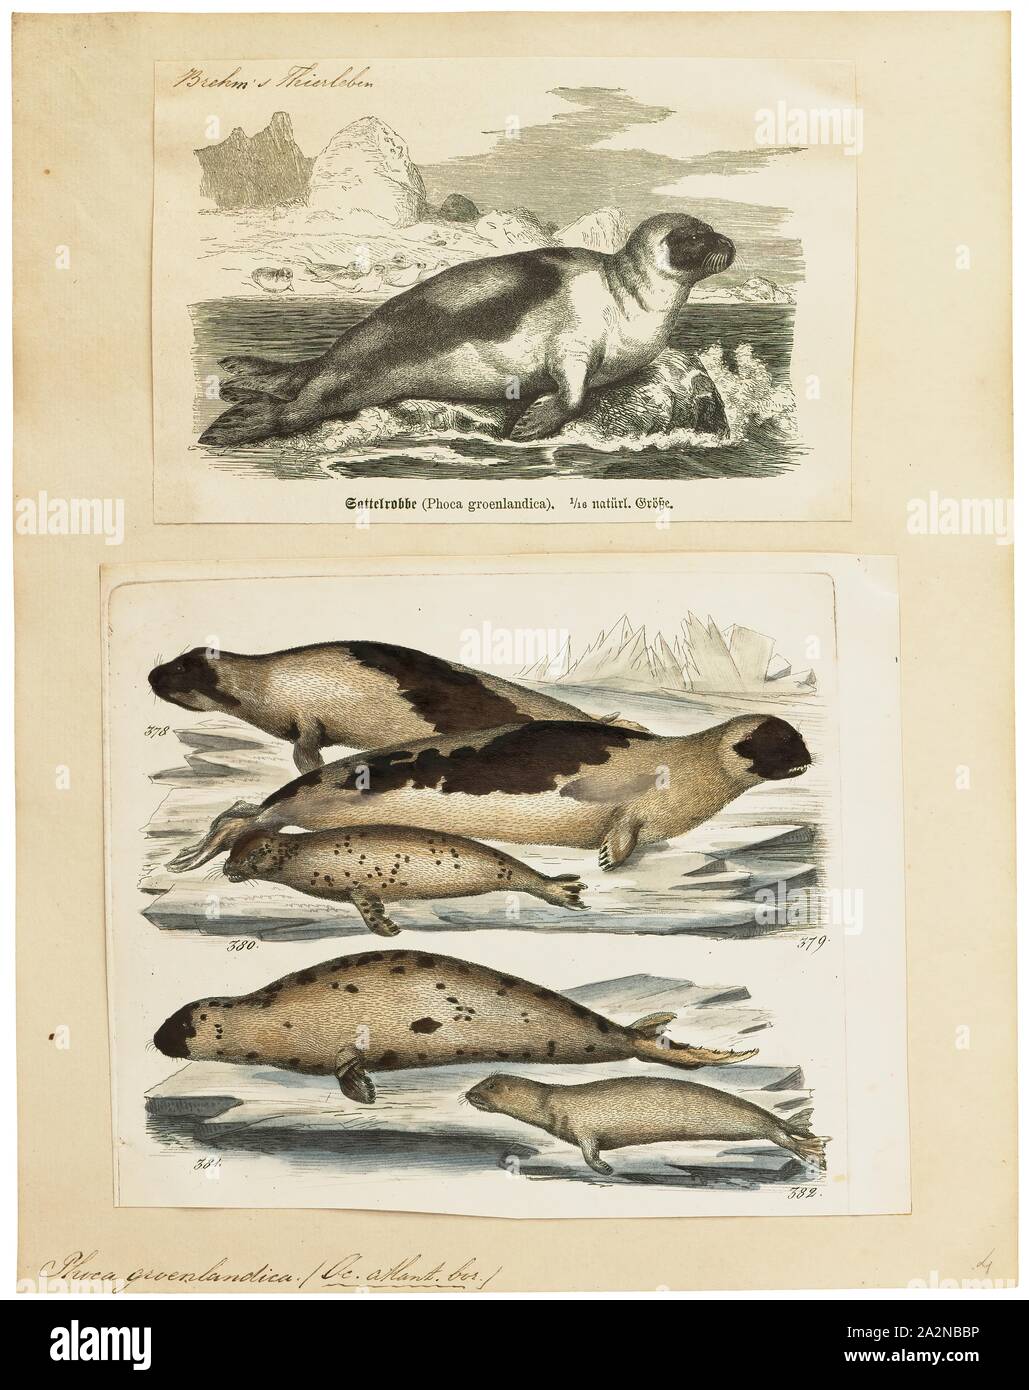 Phoca groenlandica, Imprimer, le phoque du Groenland ou joint de saddleback, Pagophilus groenlandicus est une espèce de phoque earless, ou vrai sceau, originaire de l'extrême nord de l'océan Atlantique et l'océan Arctique. À l'origine dans le genre Phoca avec un certain nombre d'autres espèces, il a été reclassé dans le genre monotypique Pagophilus en 1844. En latin, son nom scientifique se traduit par 'la glace du Groenland, amant ' et son synonyme taxonomique, Phoca groenlandica se traduit par 'joint groenlandais Banque D'Images